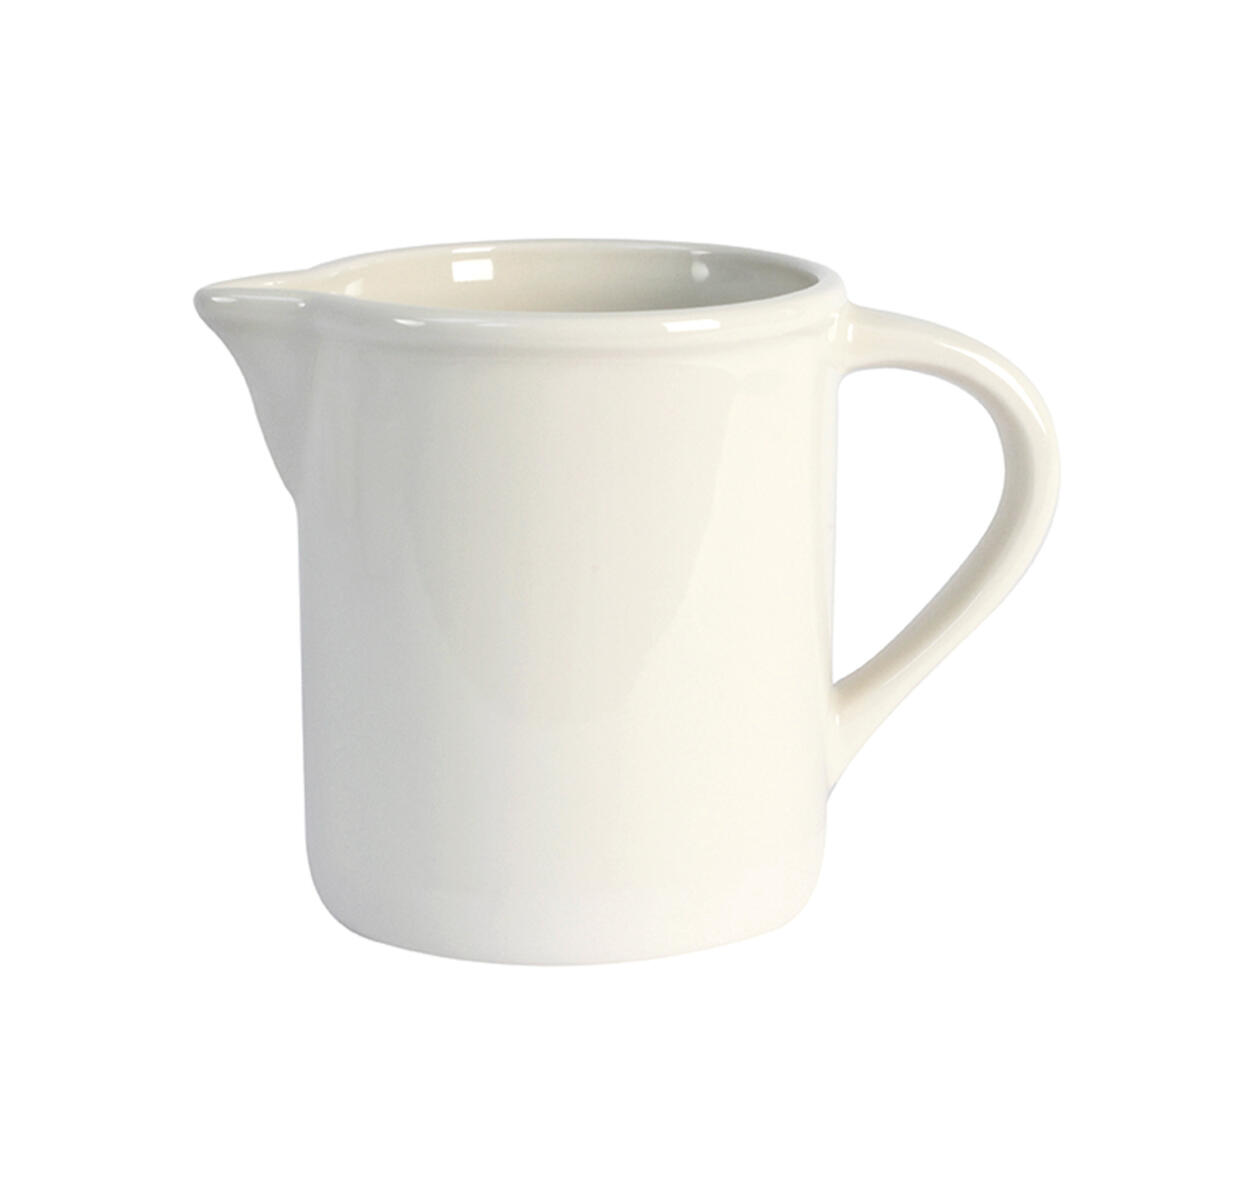 pitcher m cantine craie ceramic manufacturer